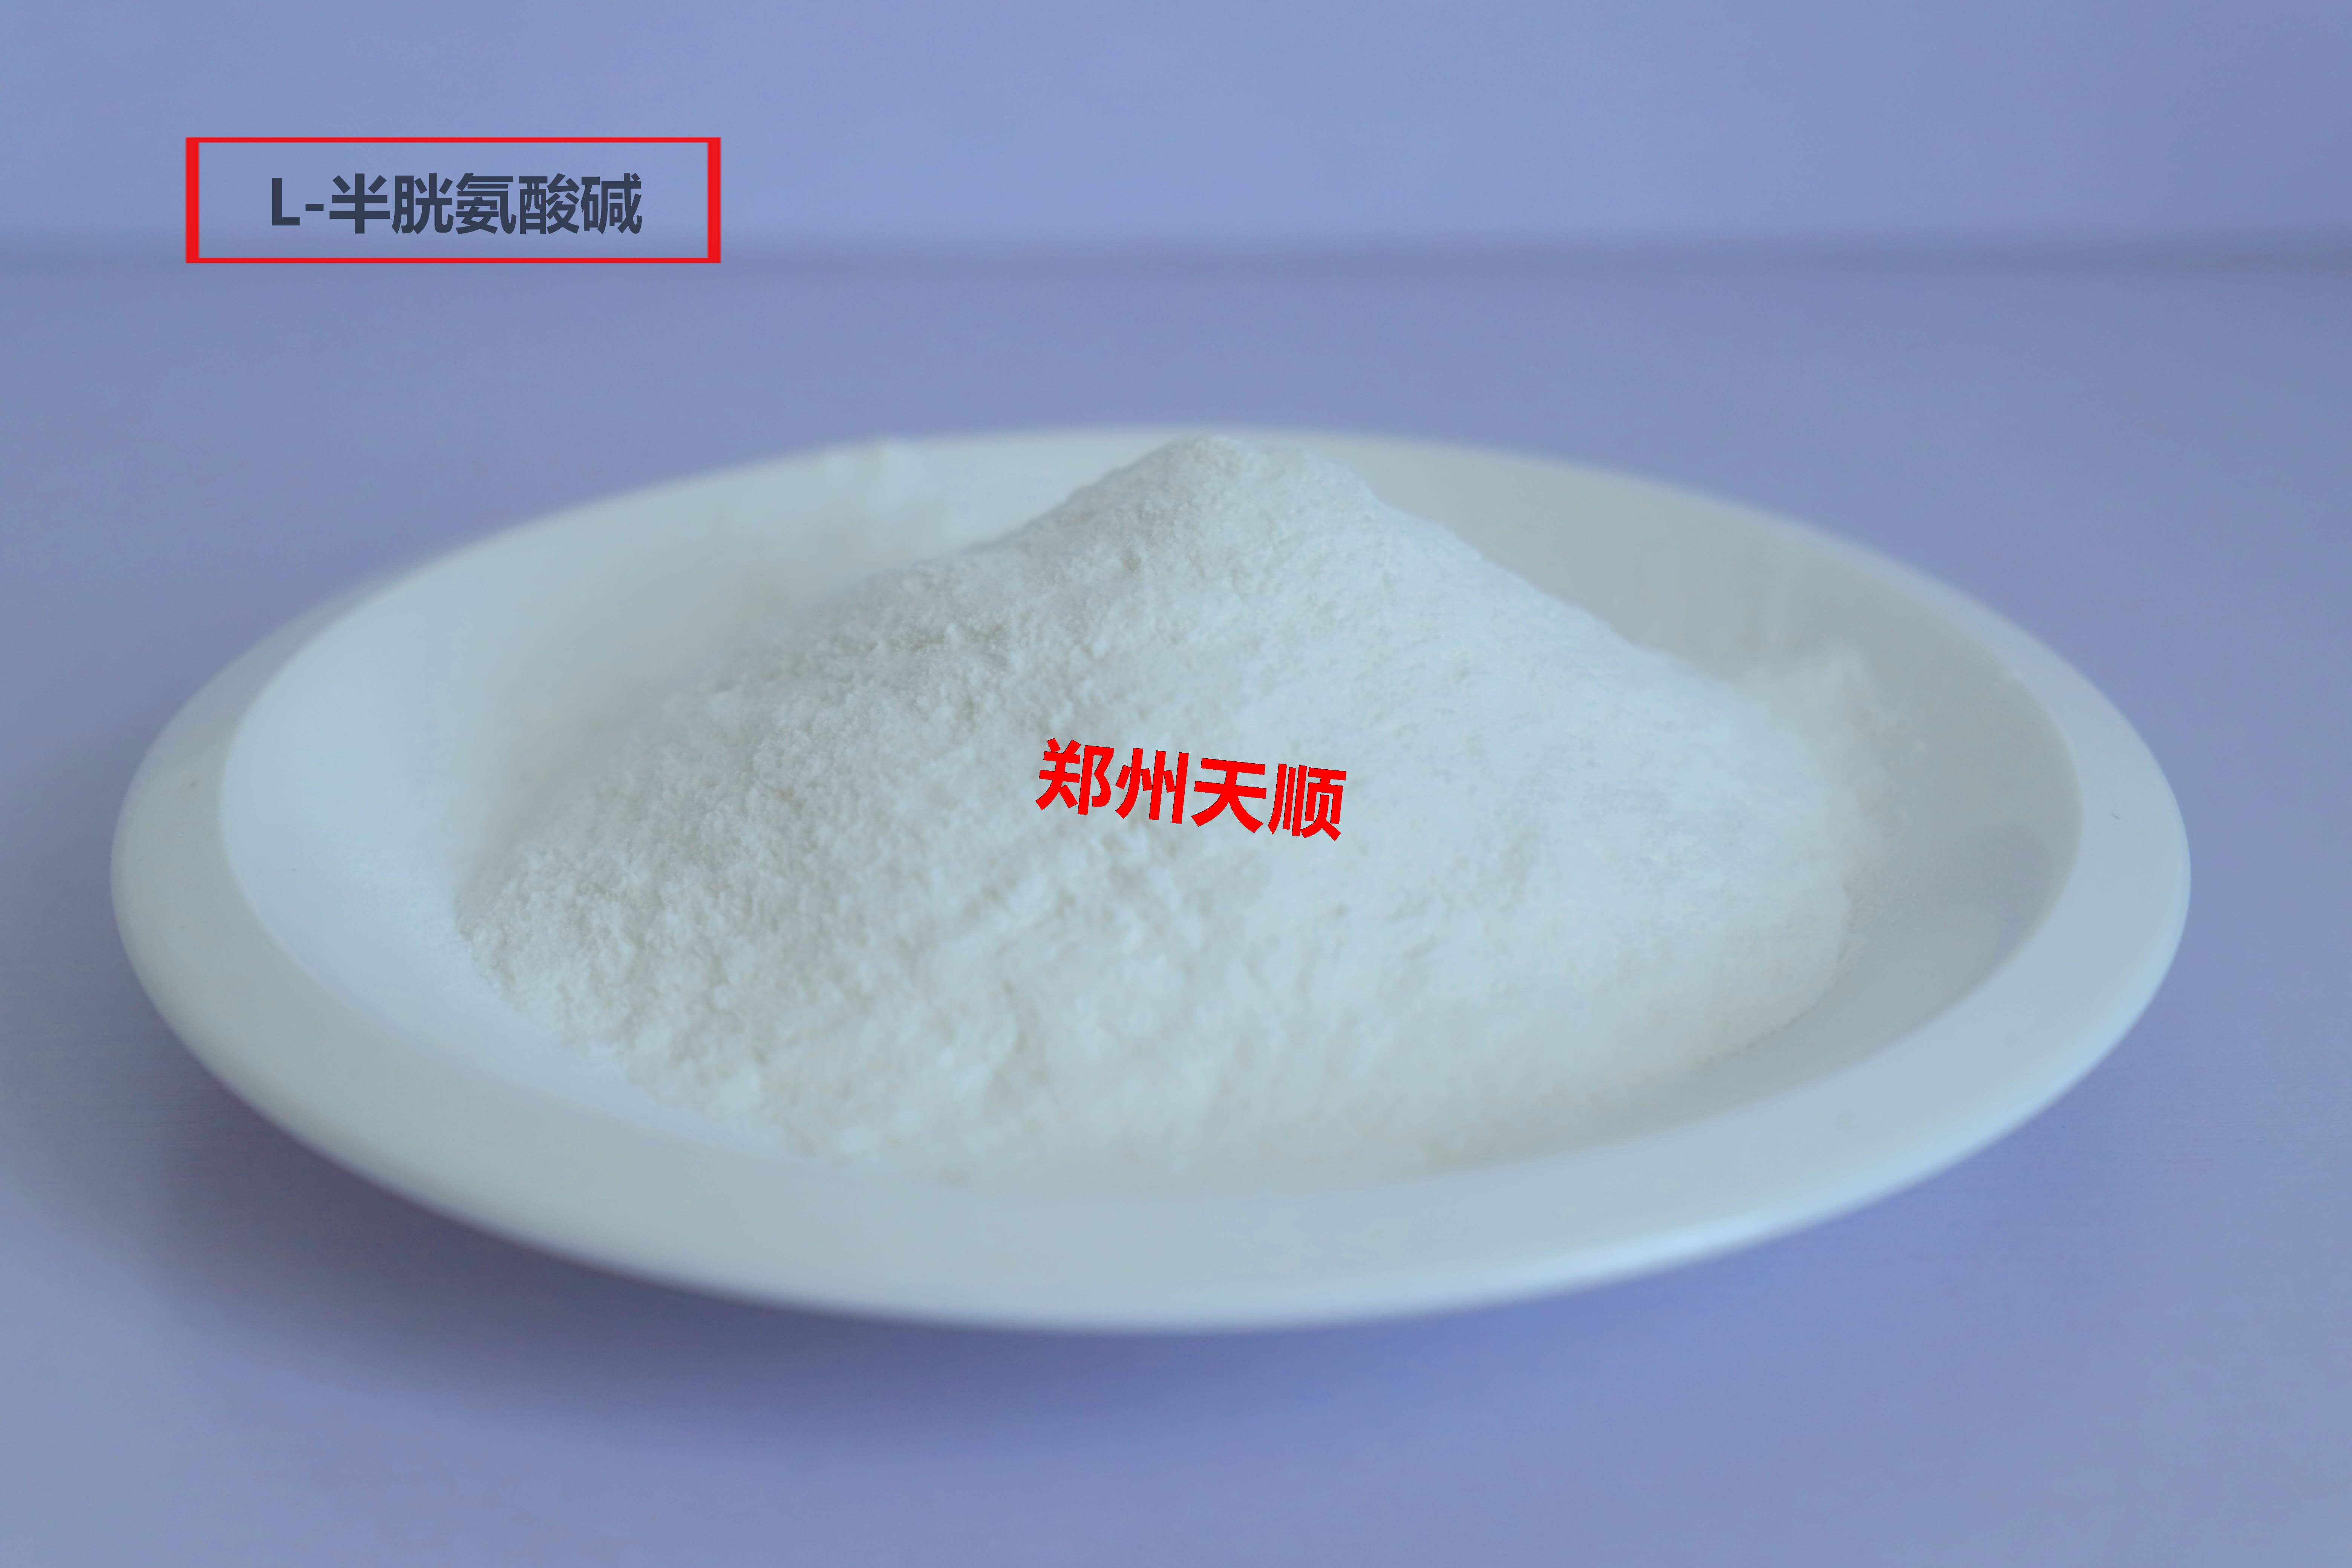 食品添加剂L-半胱氨酸盐酸盐的使用范围及使用标准